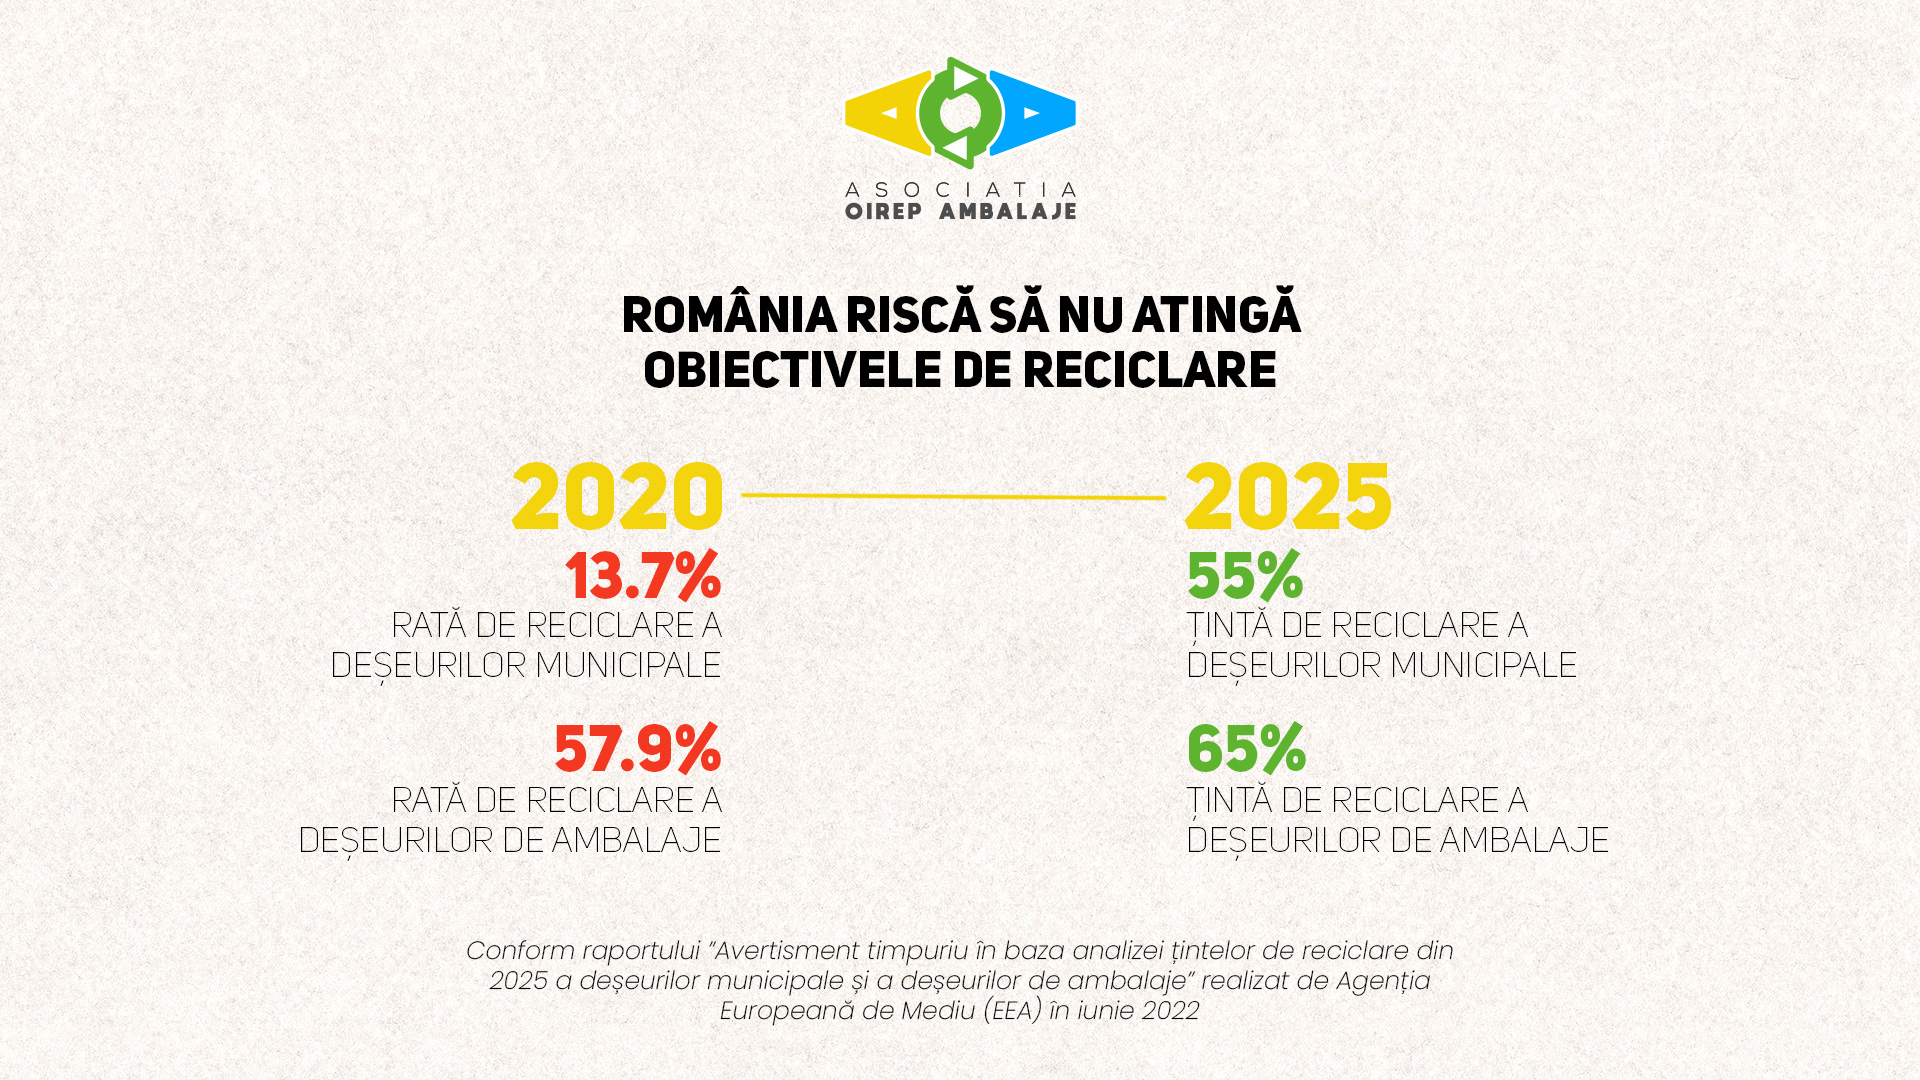 România riscă să nu atingă țintele de reciclare pentru 2025 și 2035